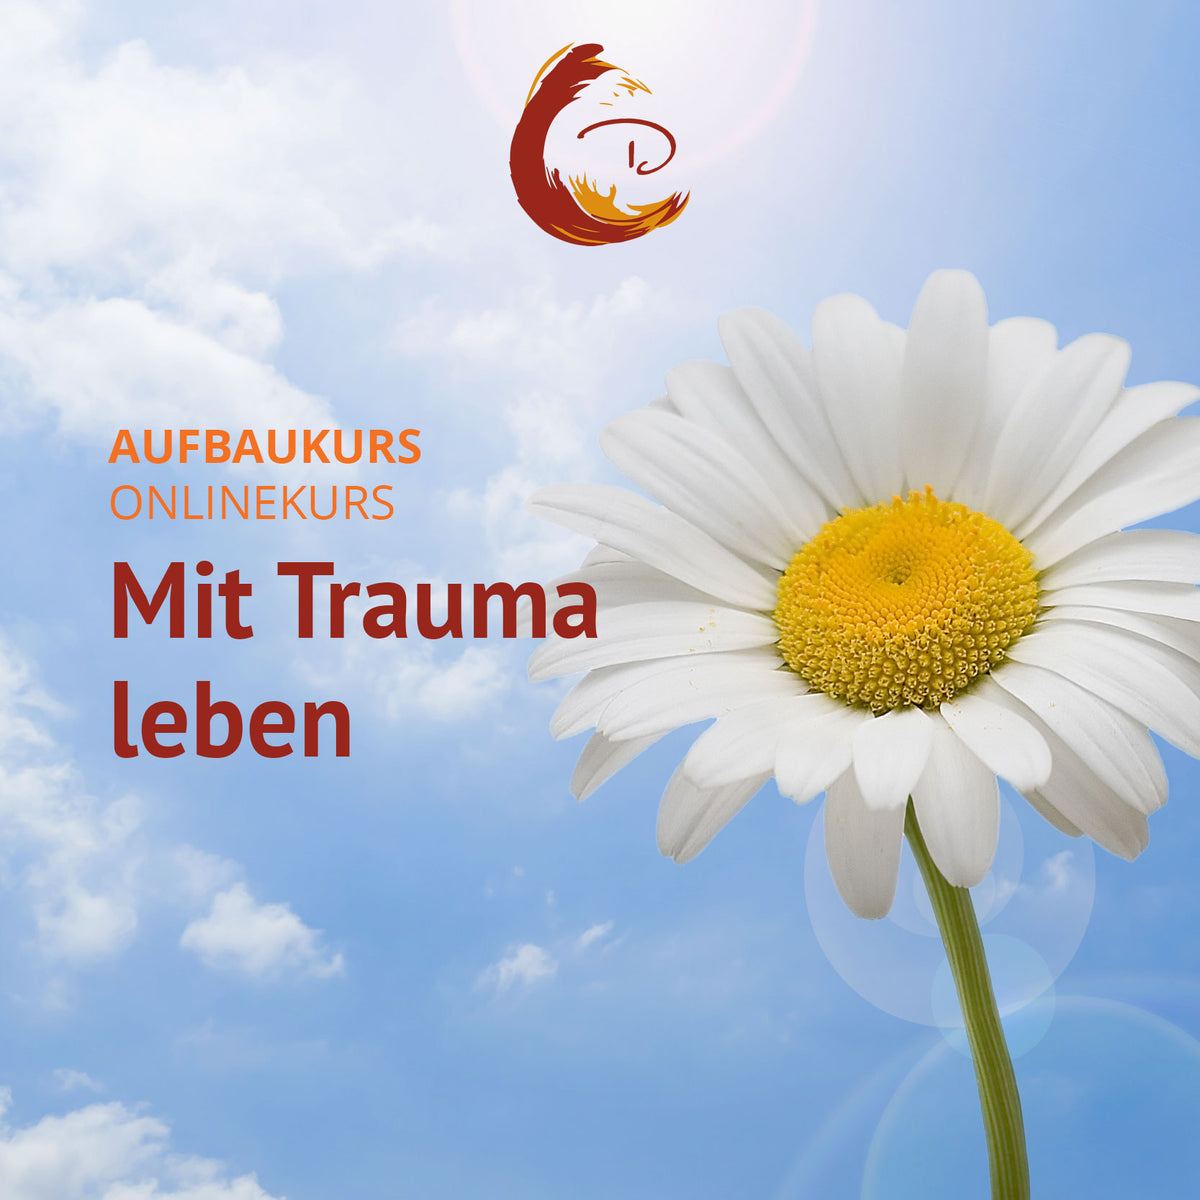 Mit Trauma leben (Aufbaukurs) - Information